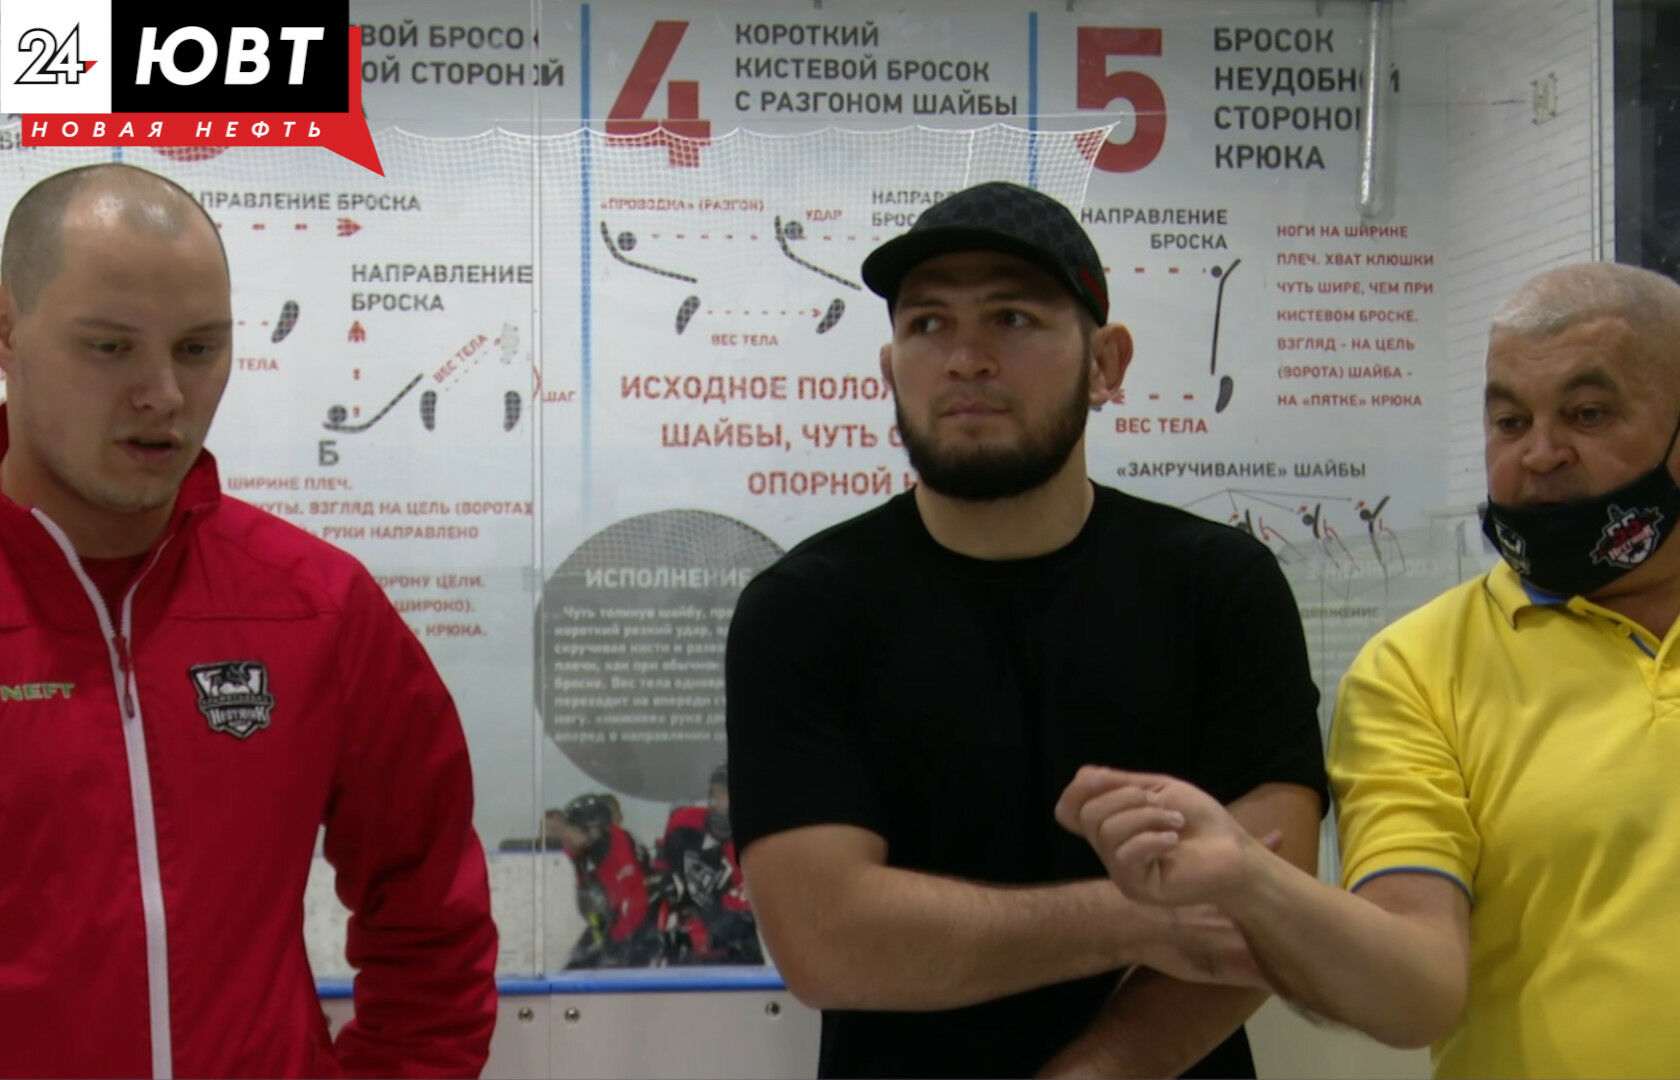 Хабиб Нурмагомедов примет участие в открытии нового спортивного зала в Альметьевске